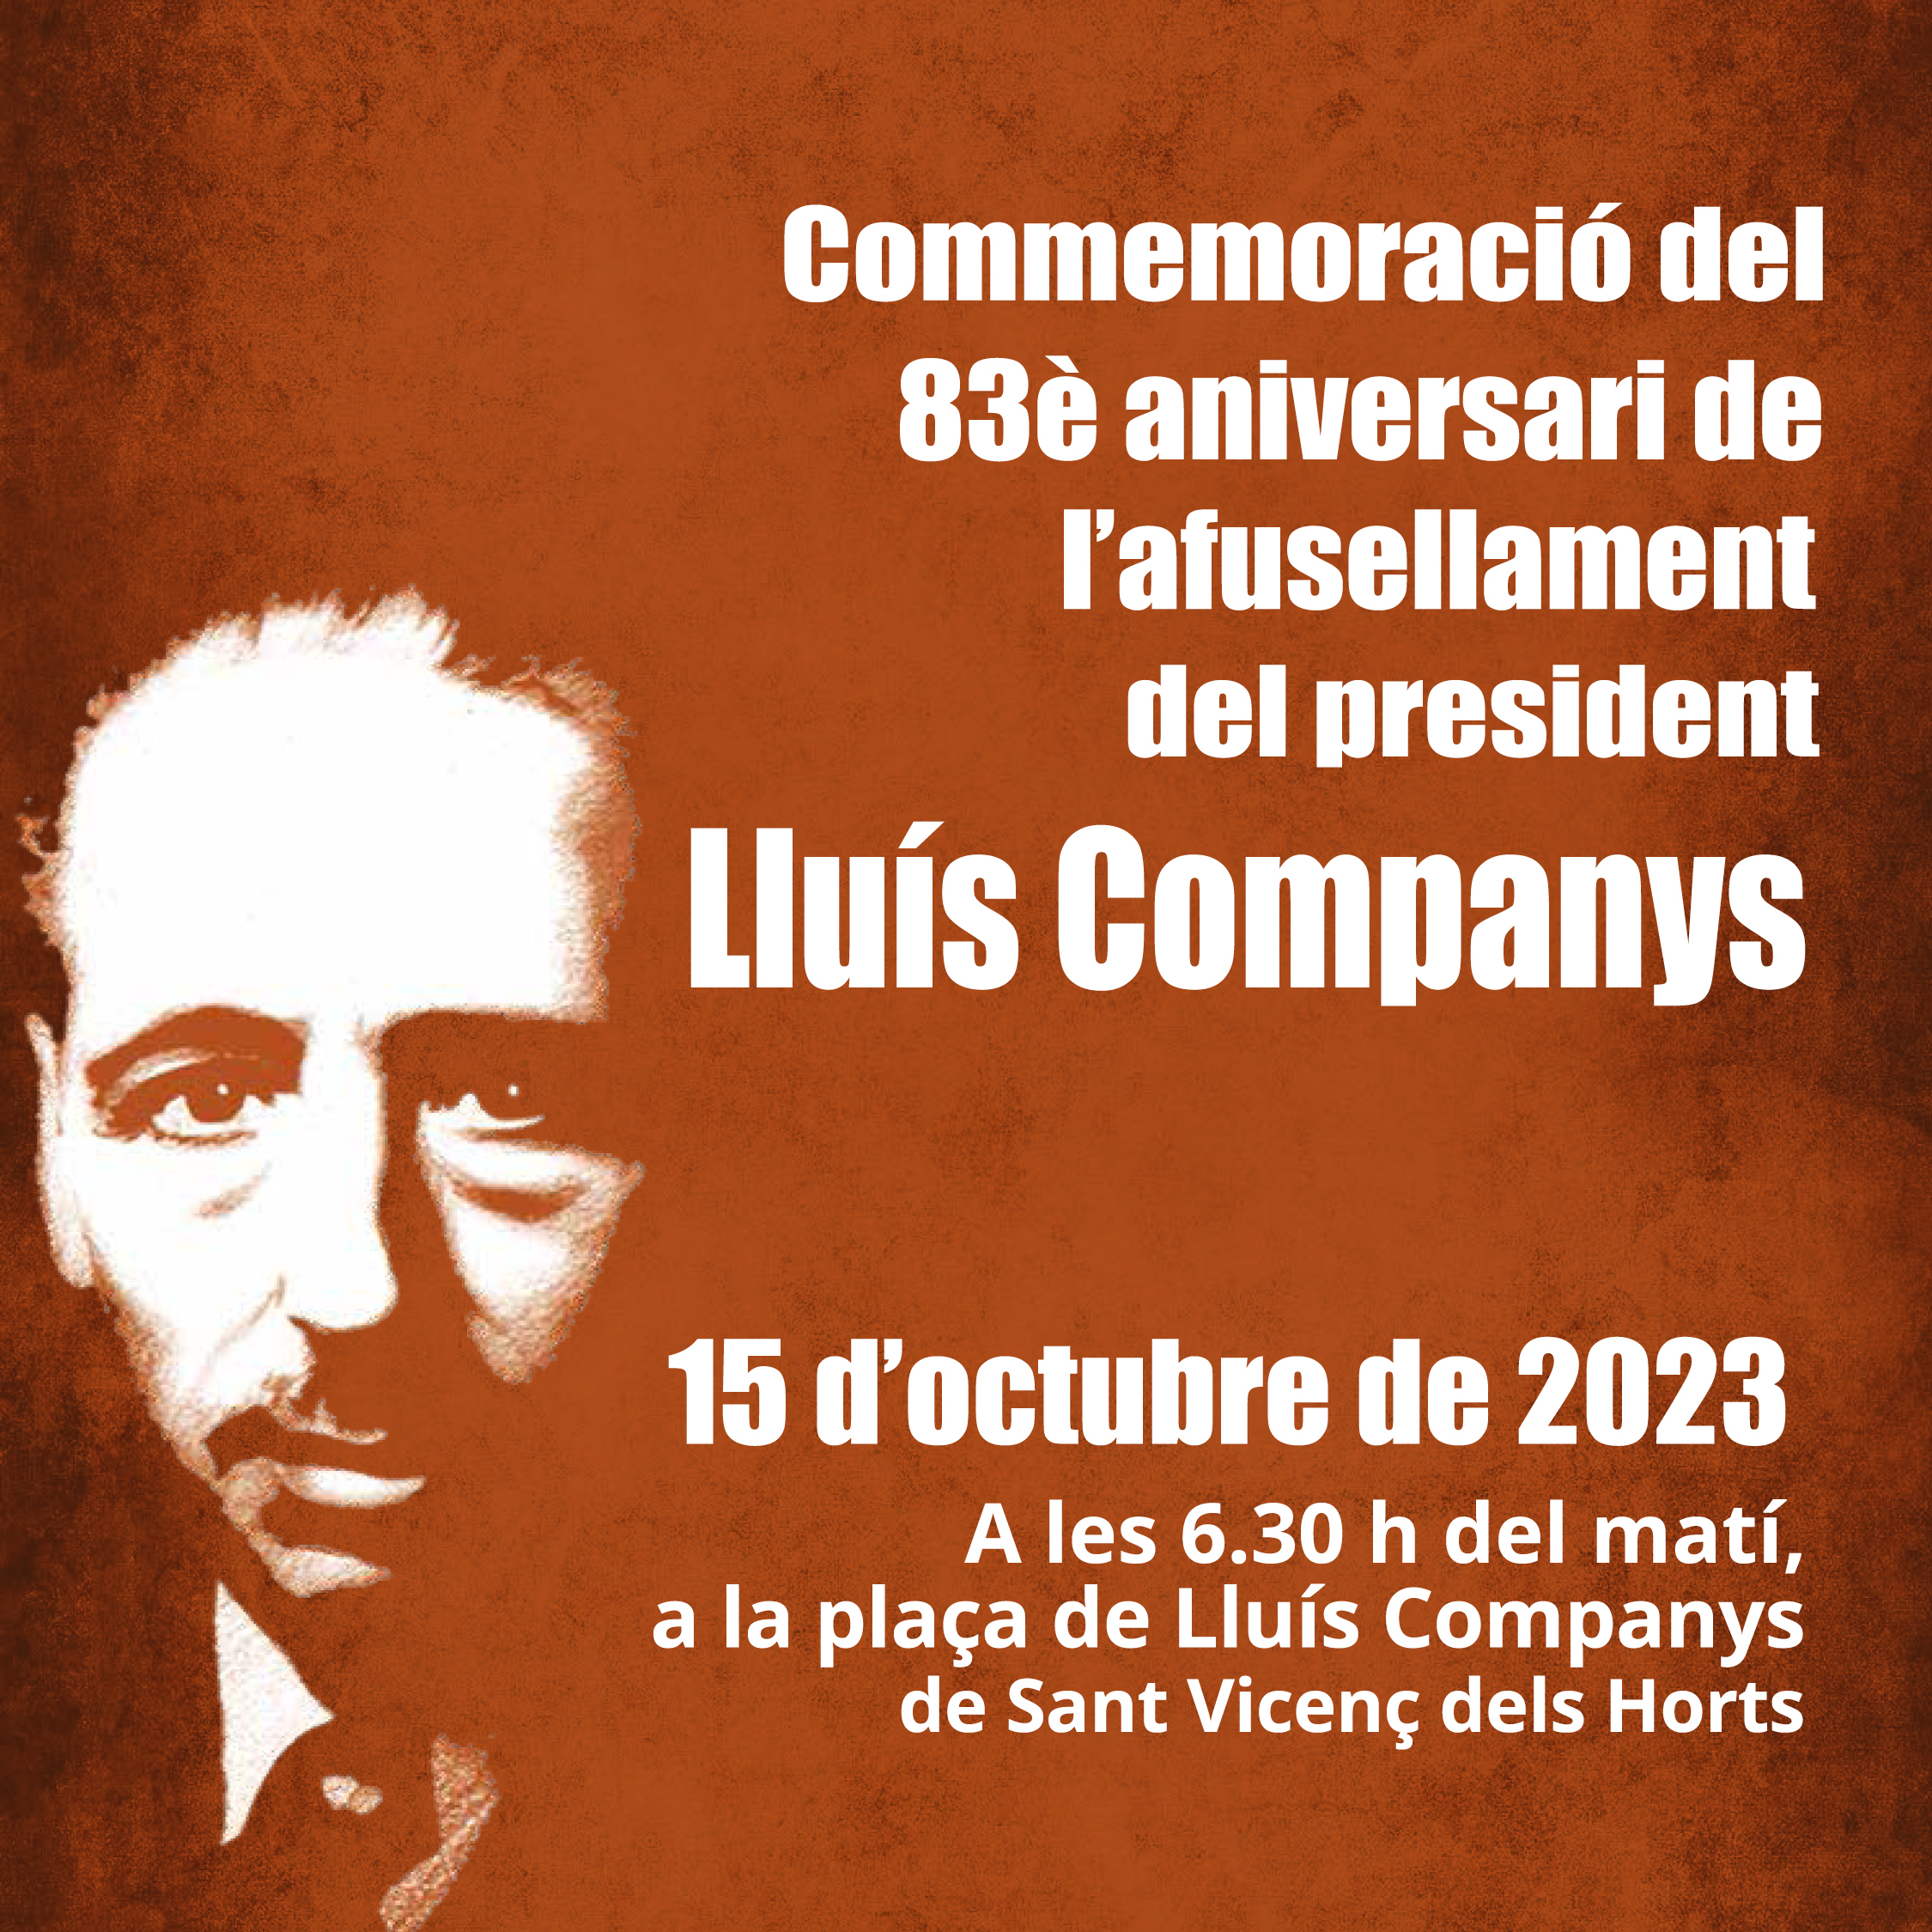 Commemoració del 83è aniversari afusellament del president Lluís Companys